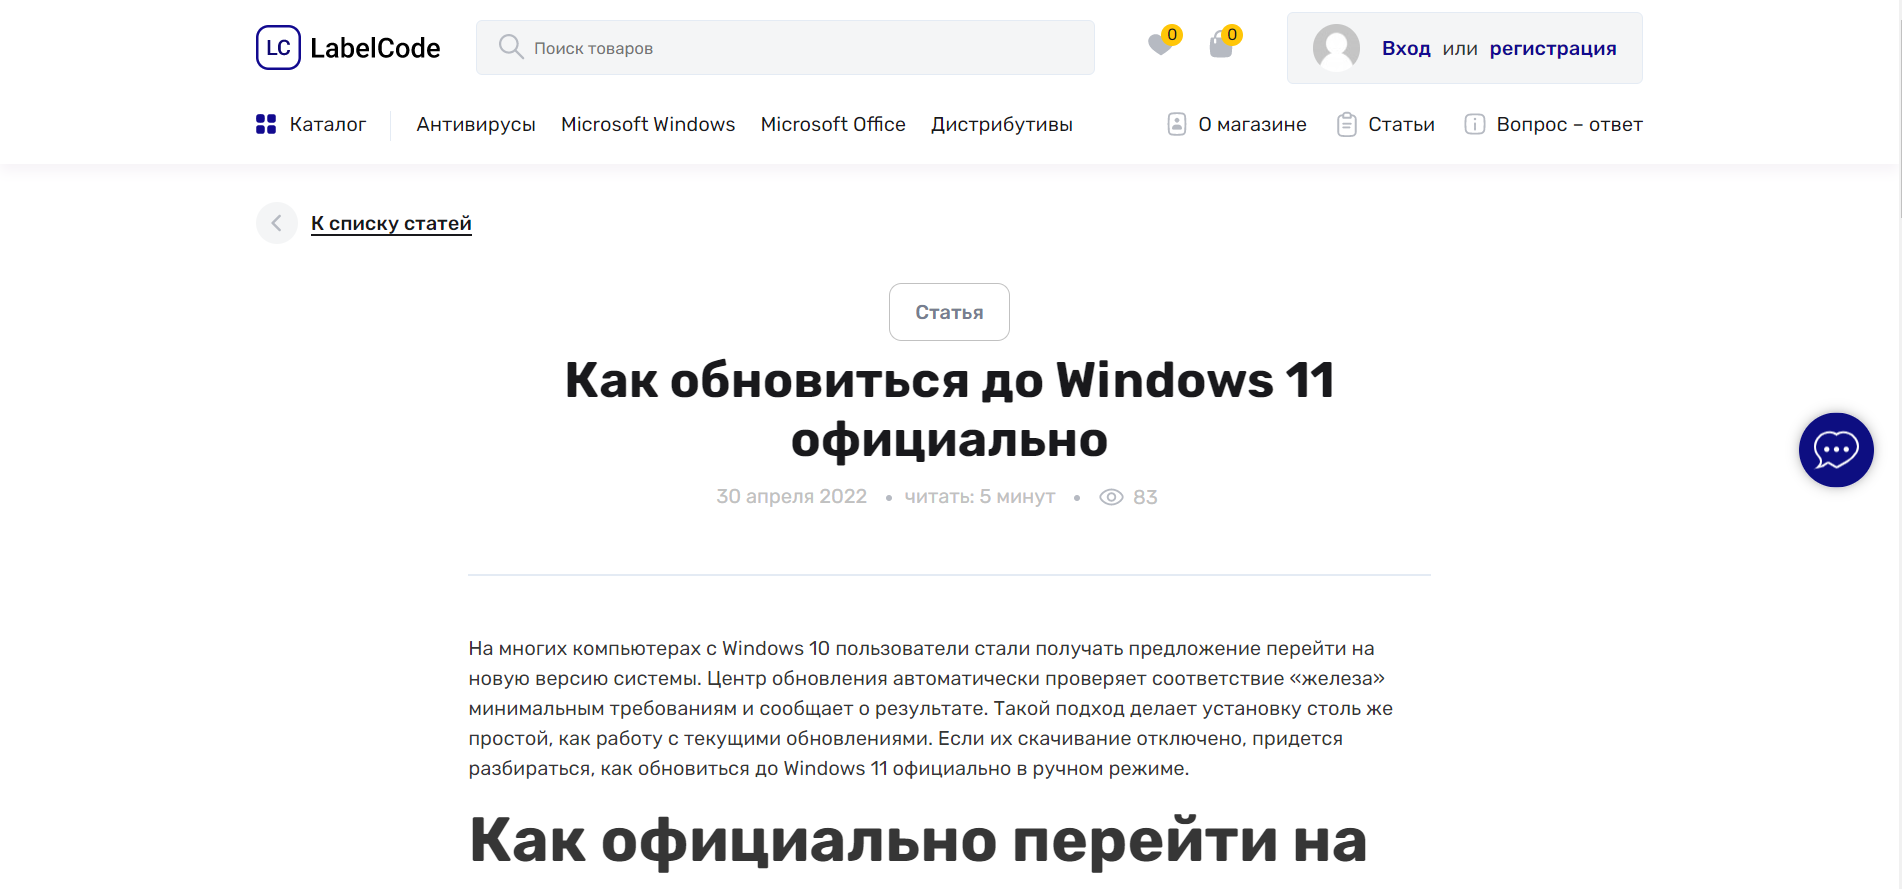 Как обновиться до Windows 11 официально